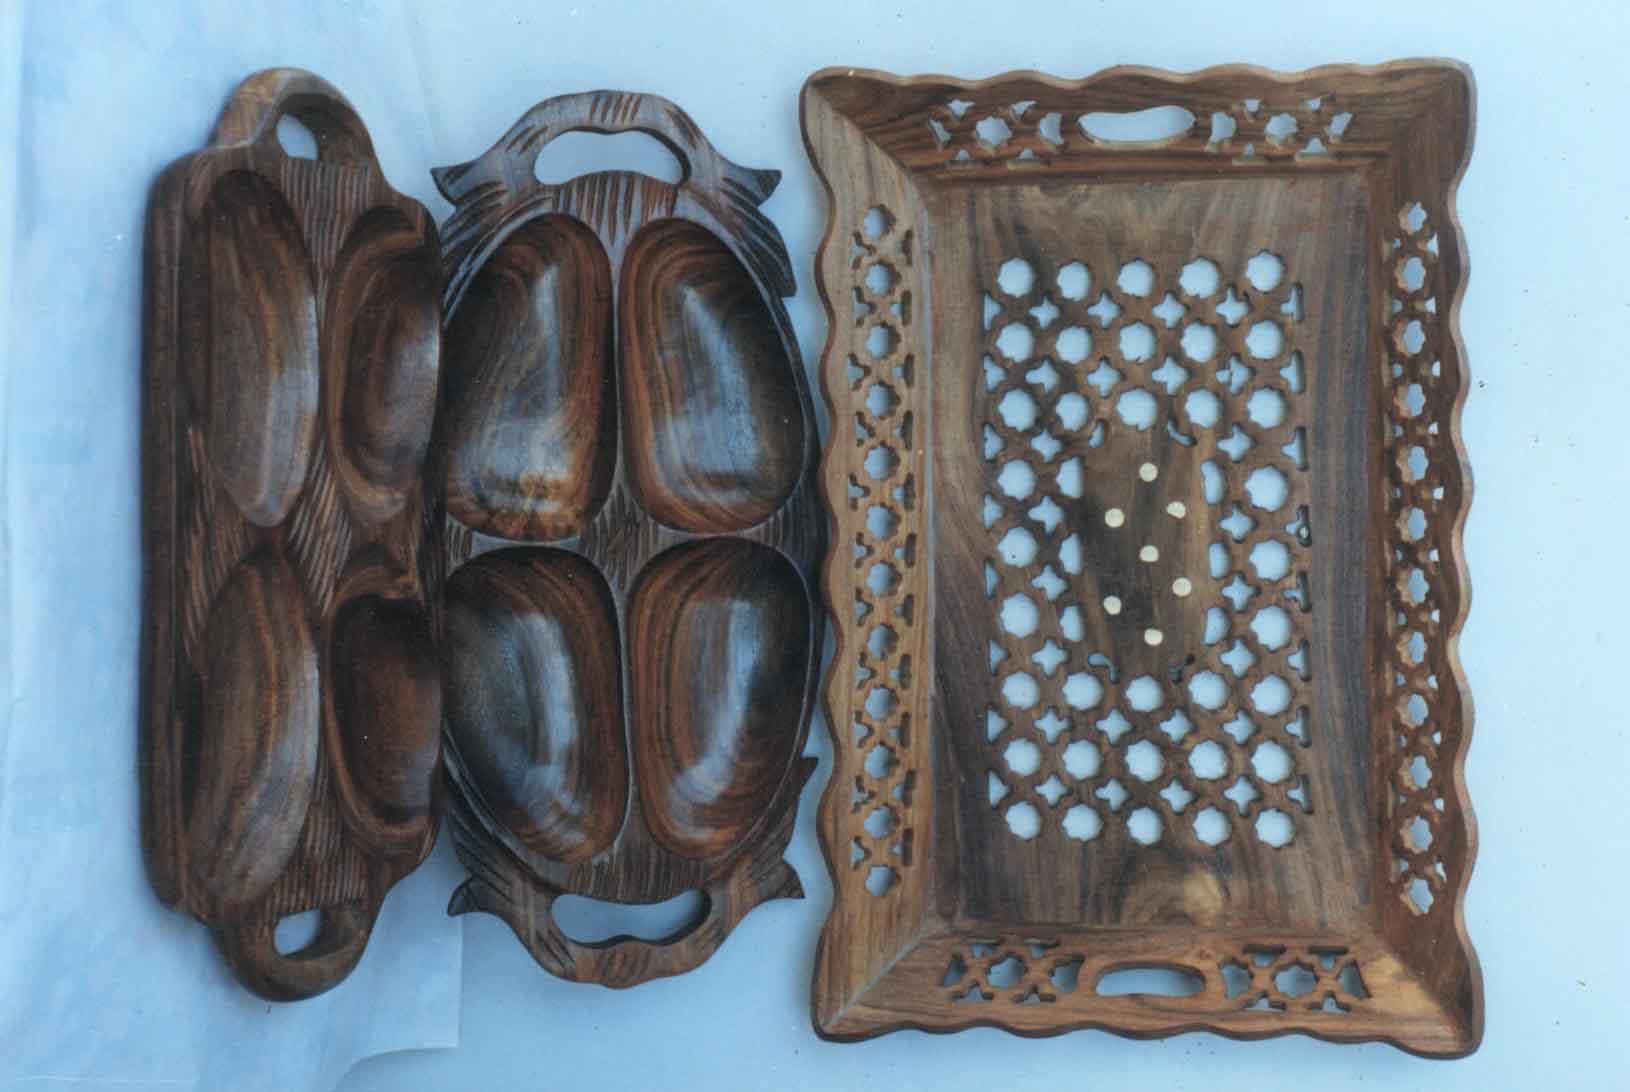  Handmade Wooden Fruit Trays (Фрукты вручную деревянных лотков)